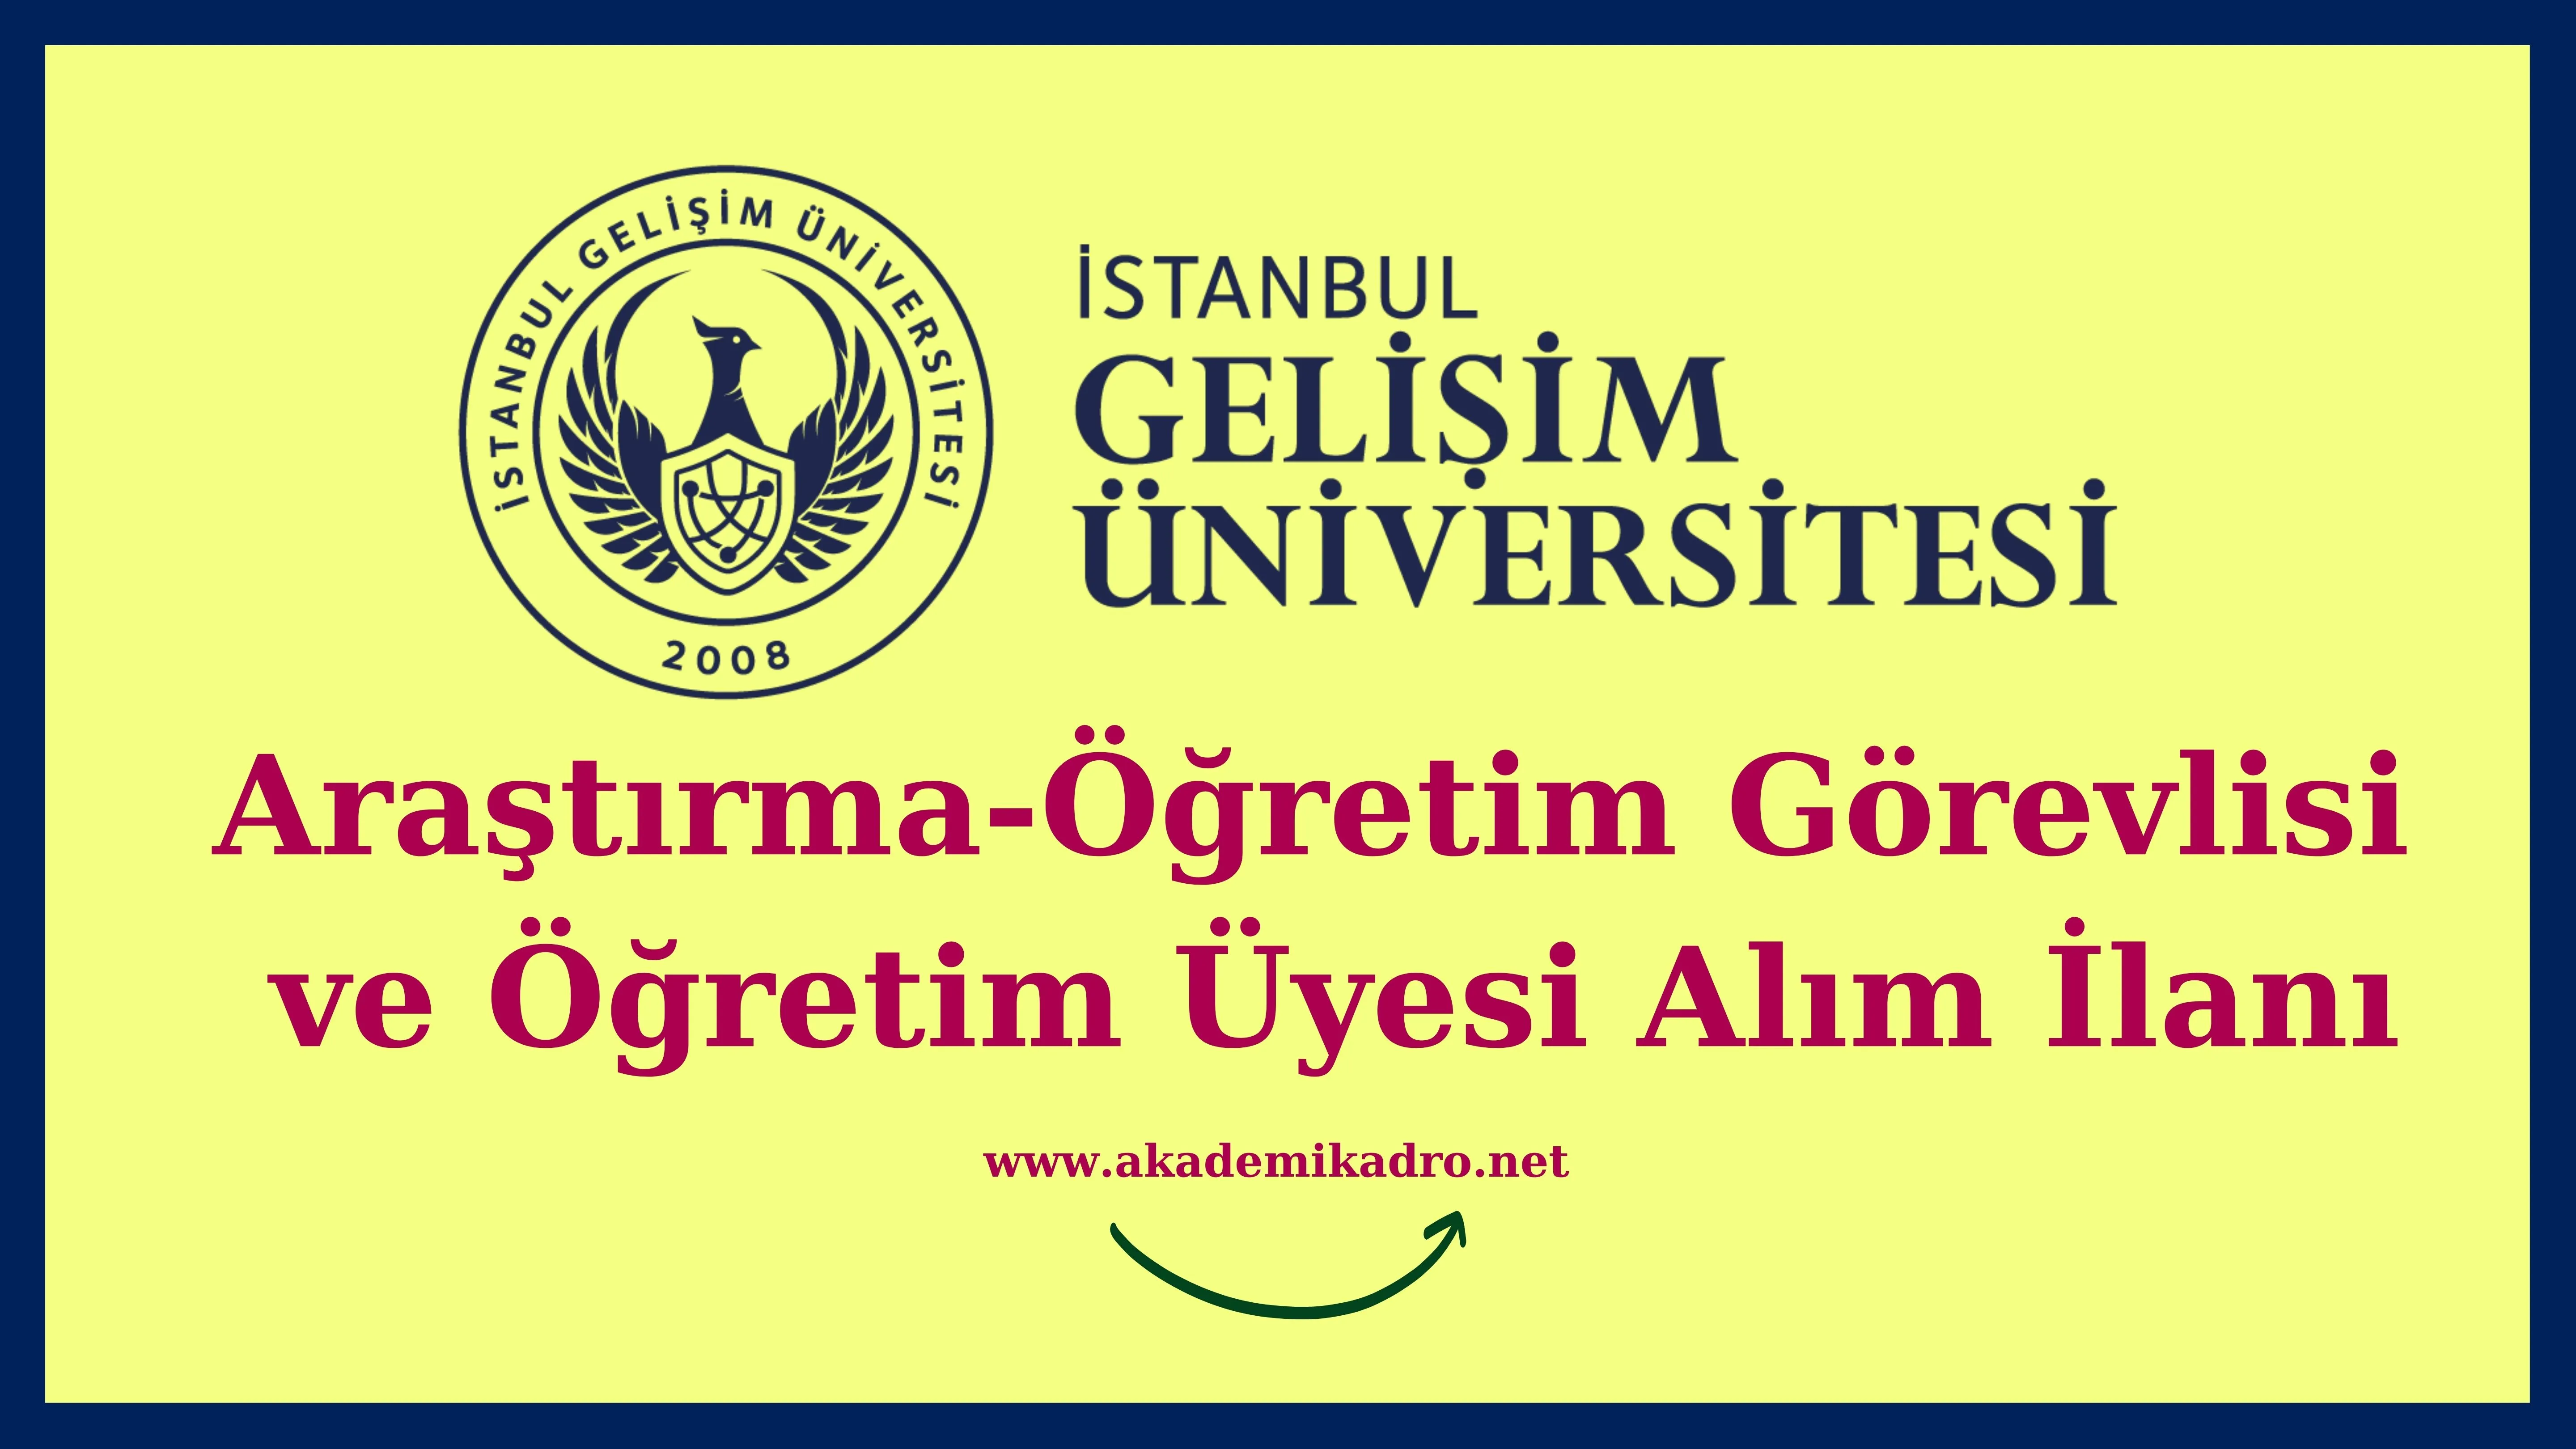 İstanbul Gelişim Üniversitesi 3 Öğretim görevlisi, 3 Araştırma görevlisi ve 26 Öğretim üyesi alacak.